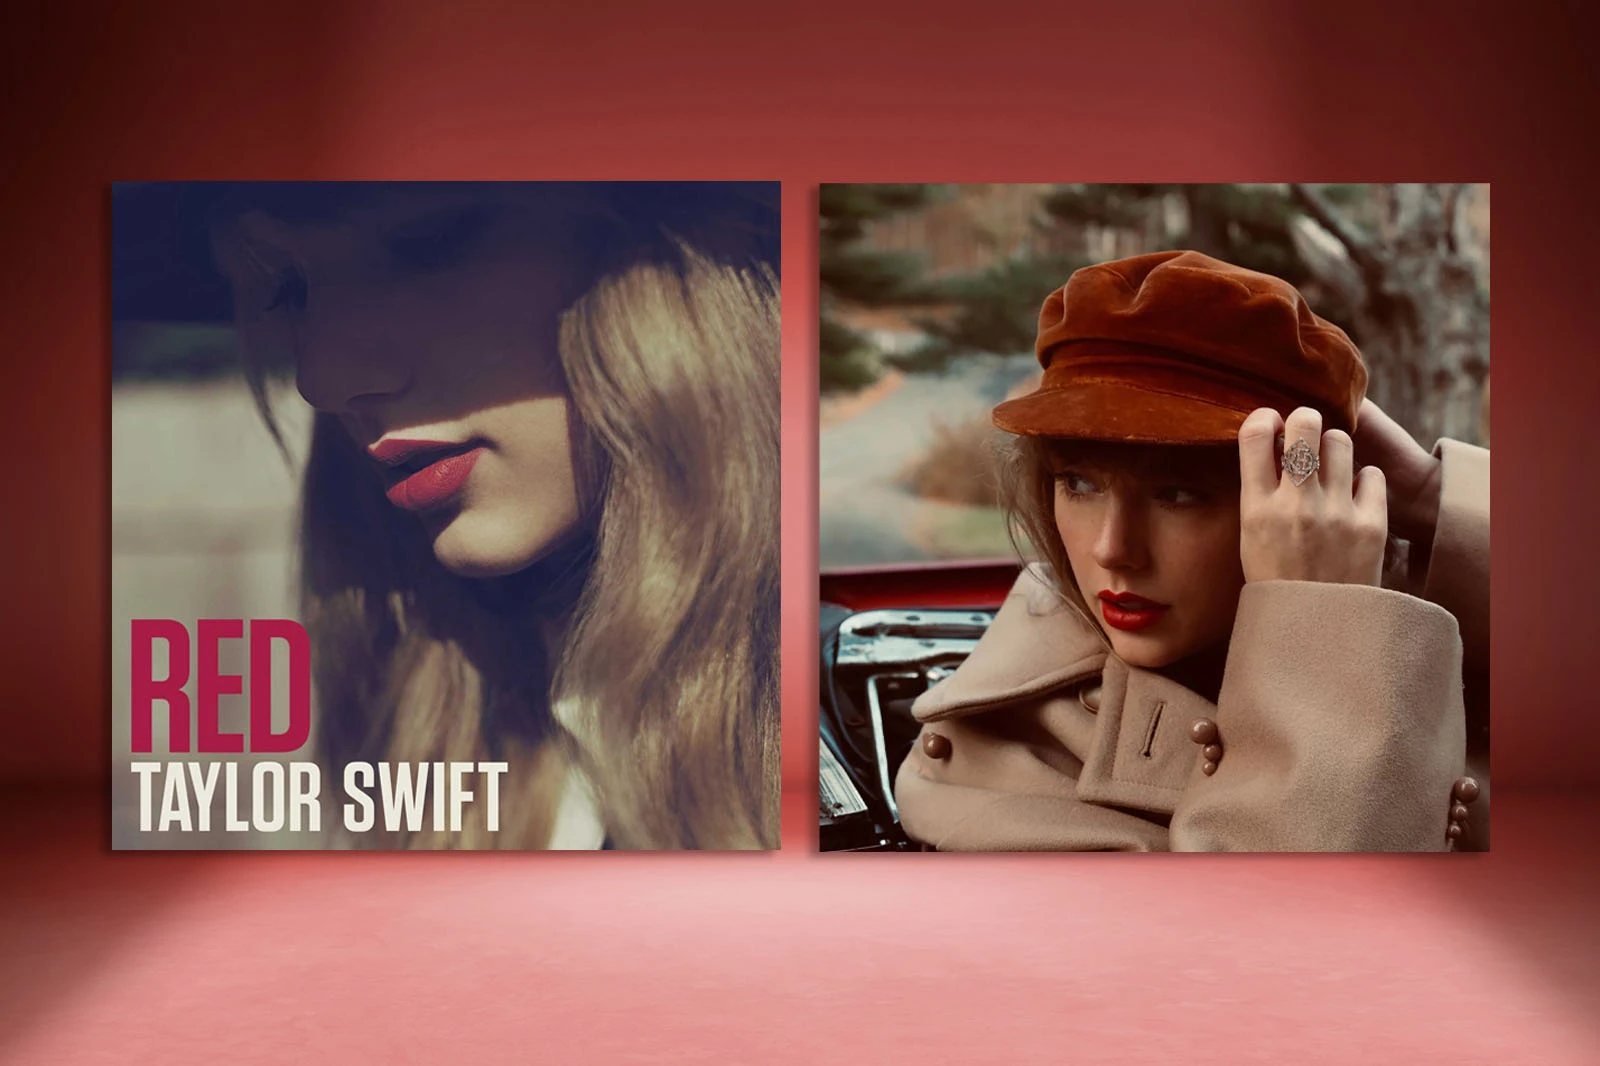 Ngày này nhắc lại: 9 năm trước, Taylor Swift phát hành album ‘Red’ thu về loạt thành tích khủng trong sự nghiệp - ảnh 1